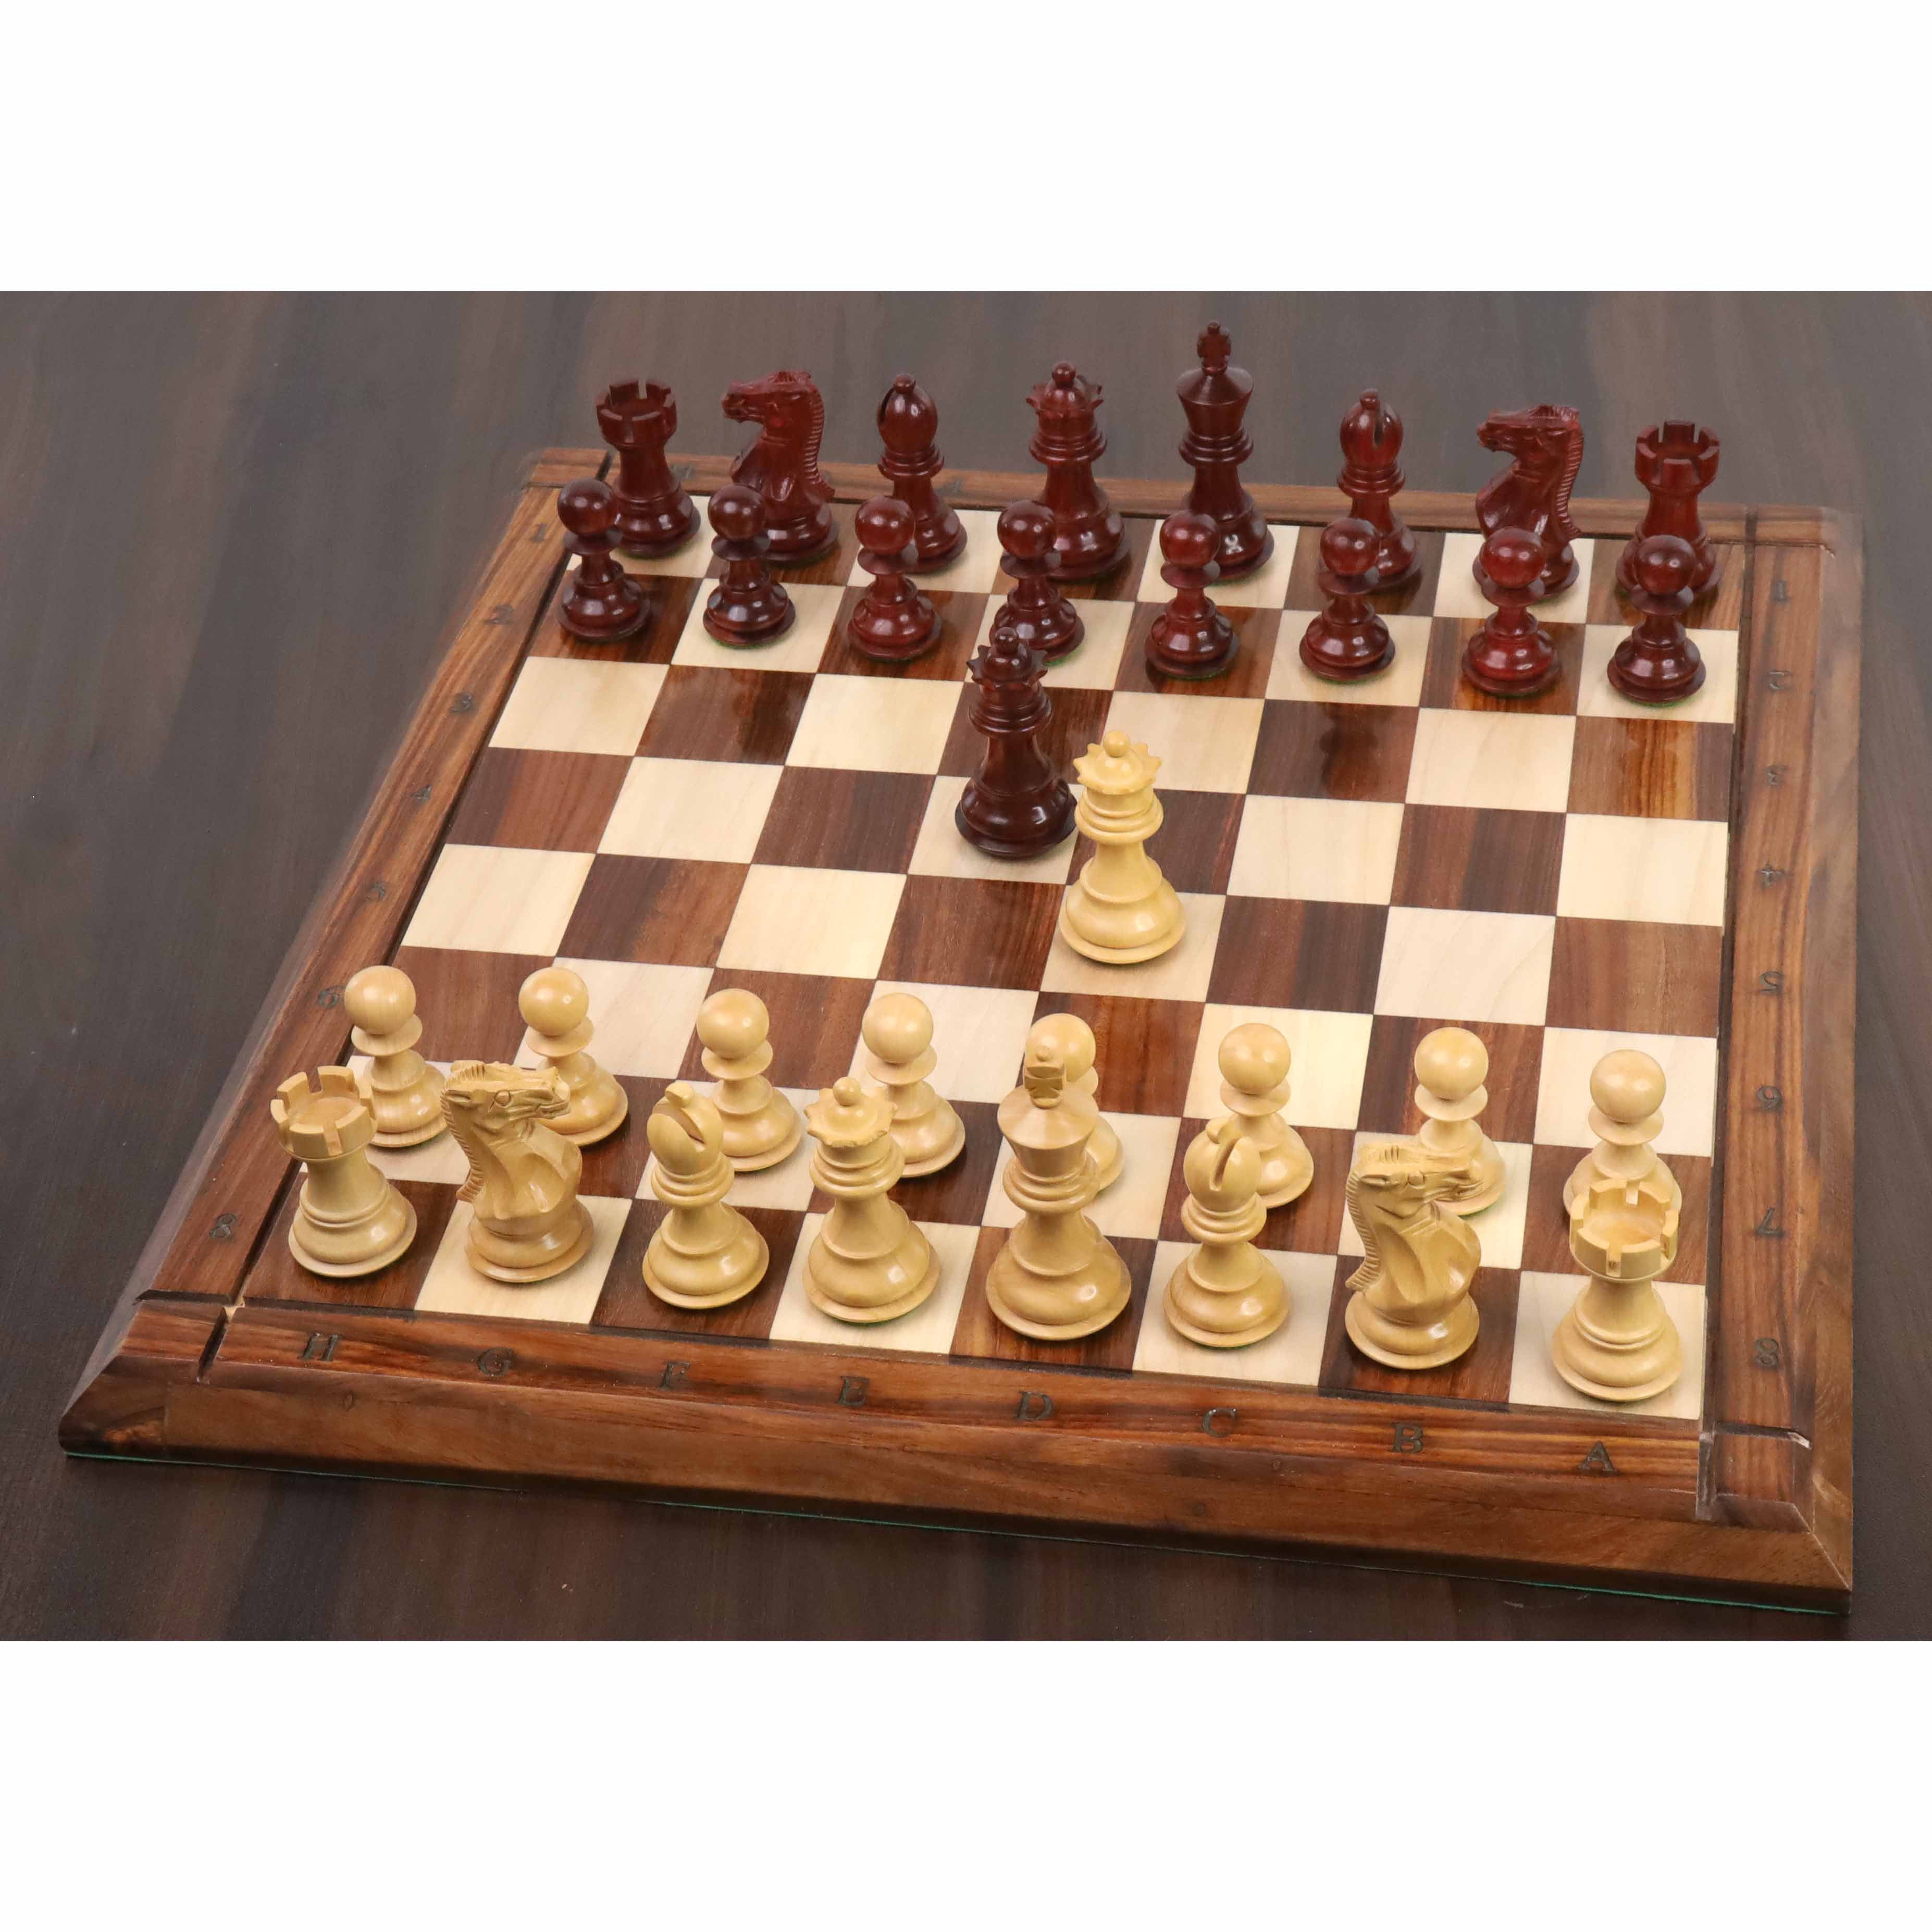 3.1 Pro Staunton Luxury Chess Set- Chess Pieces Only - Triple